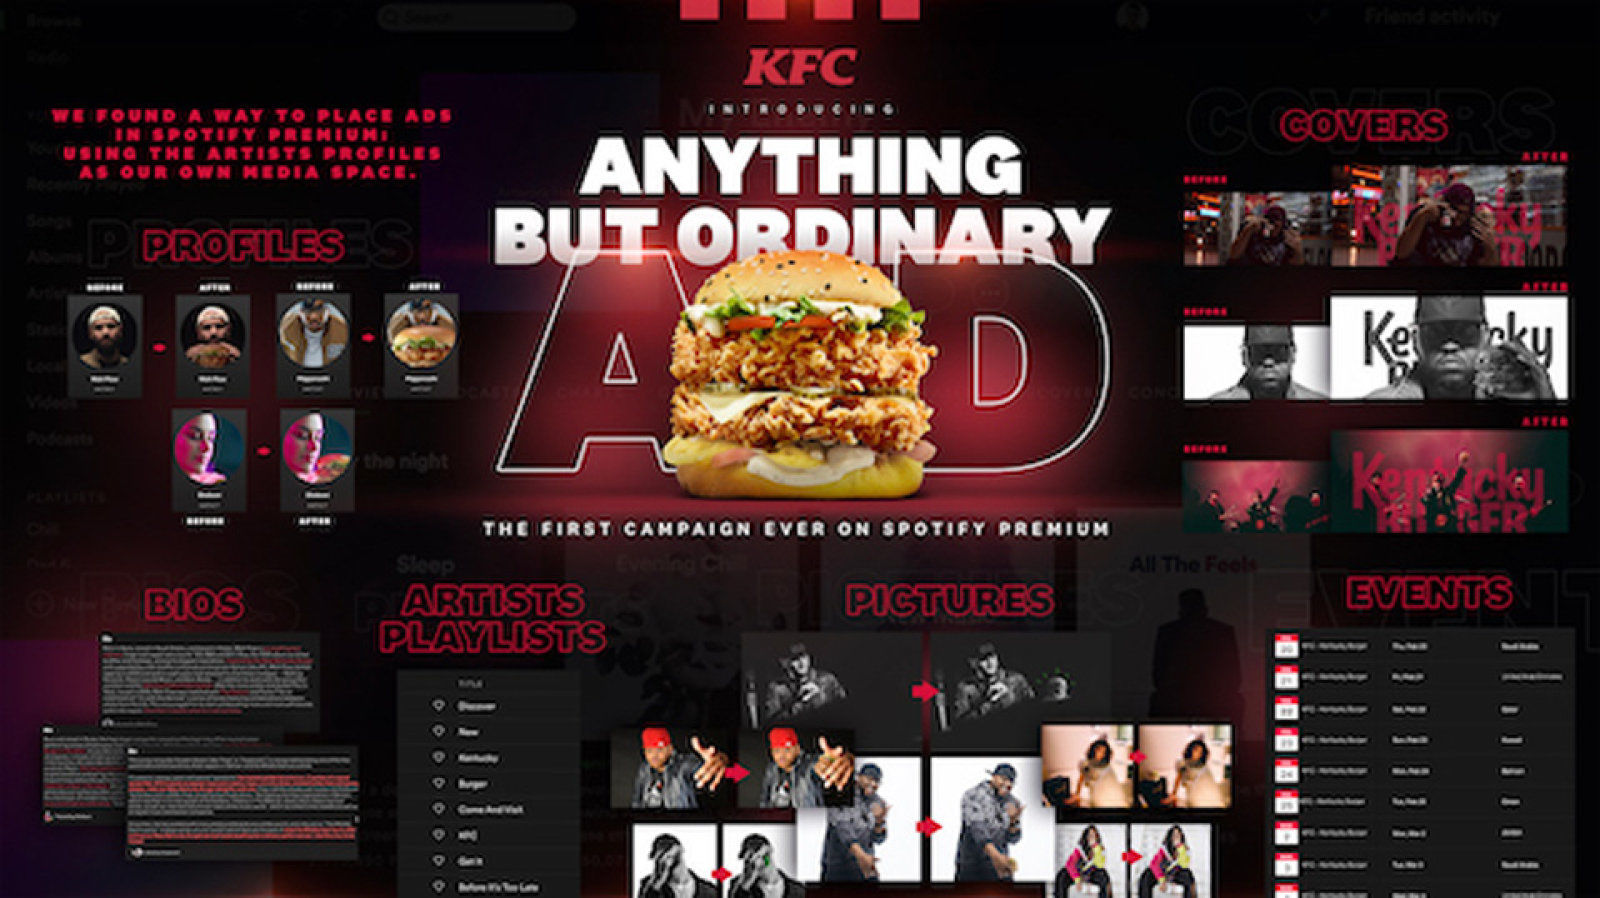 広告なしのSpotify PremiumにKFCが広告出す。アーティスト写真がチキンサンドに